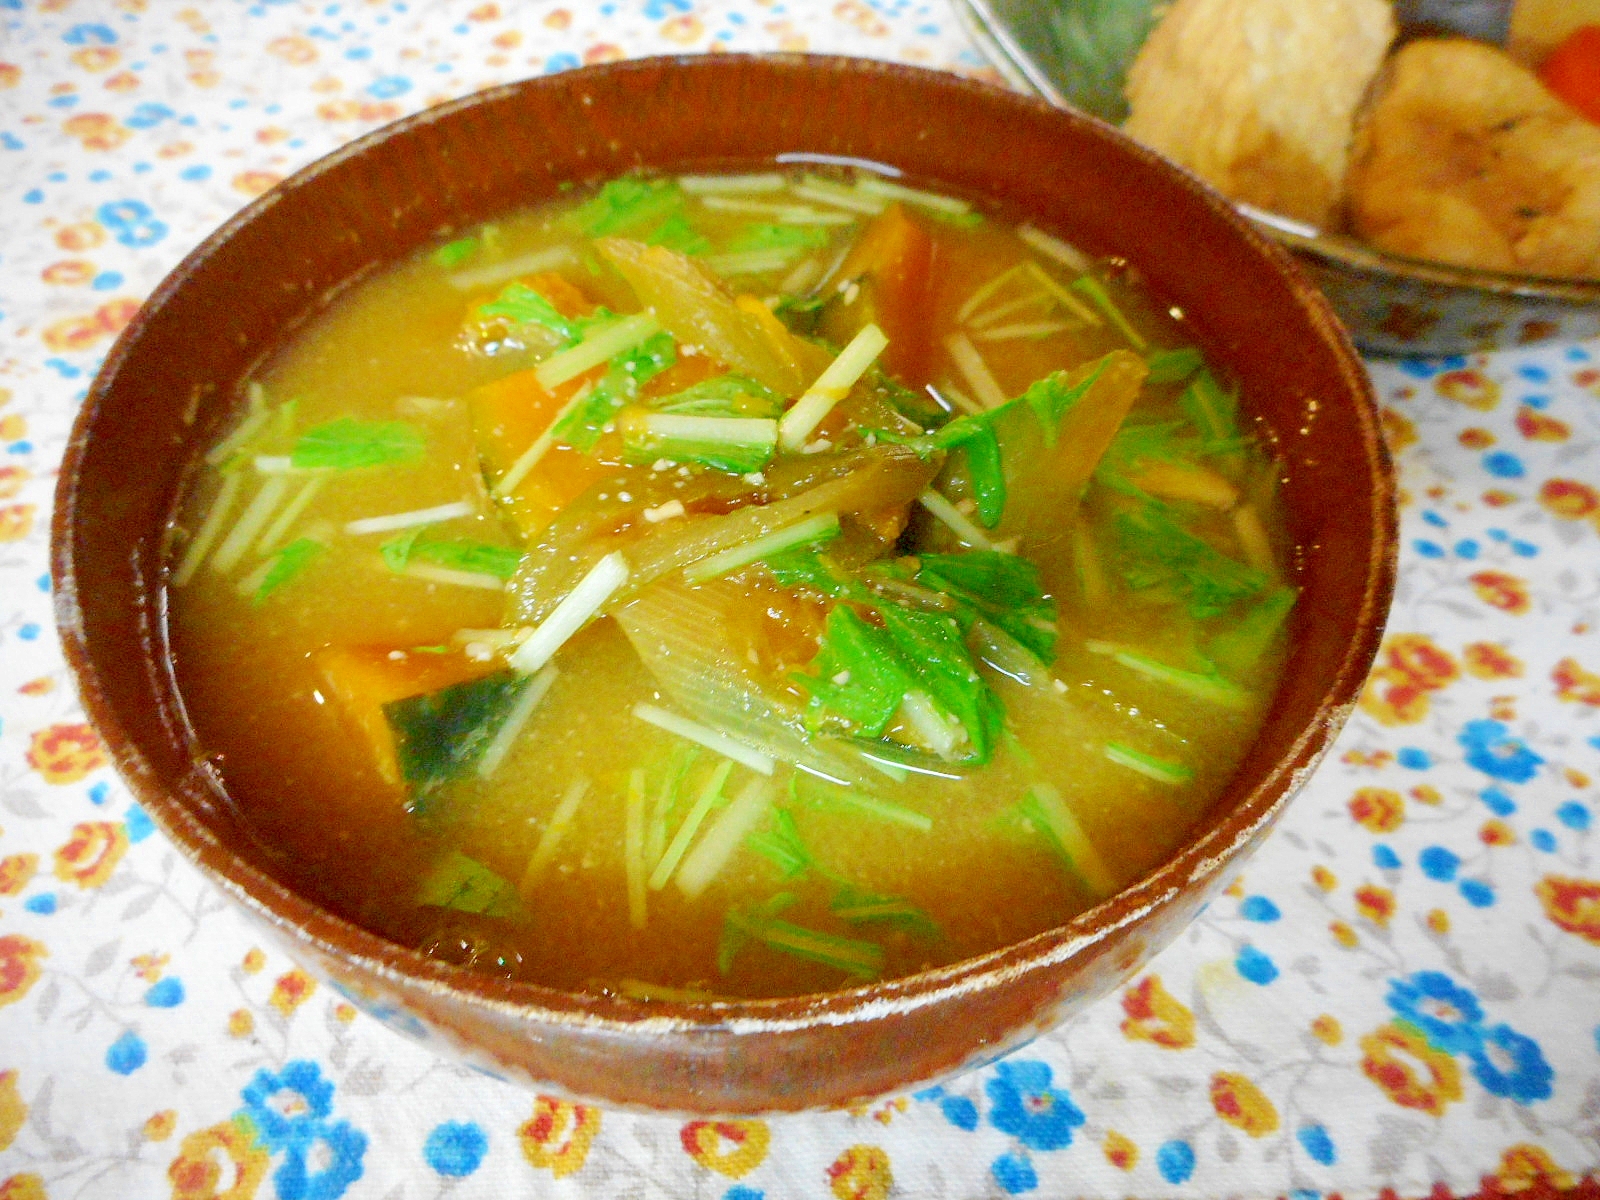 カボチャと水菜の味噌汁